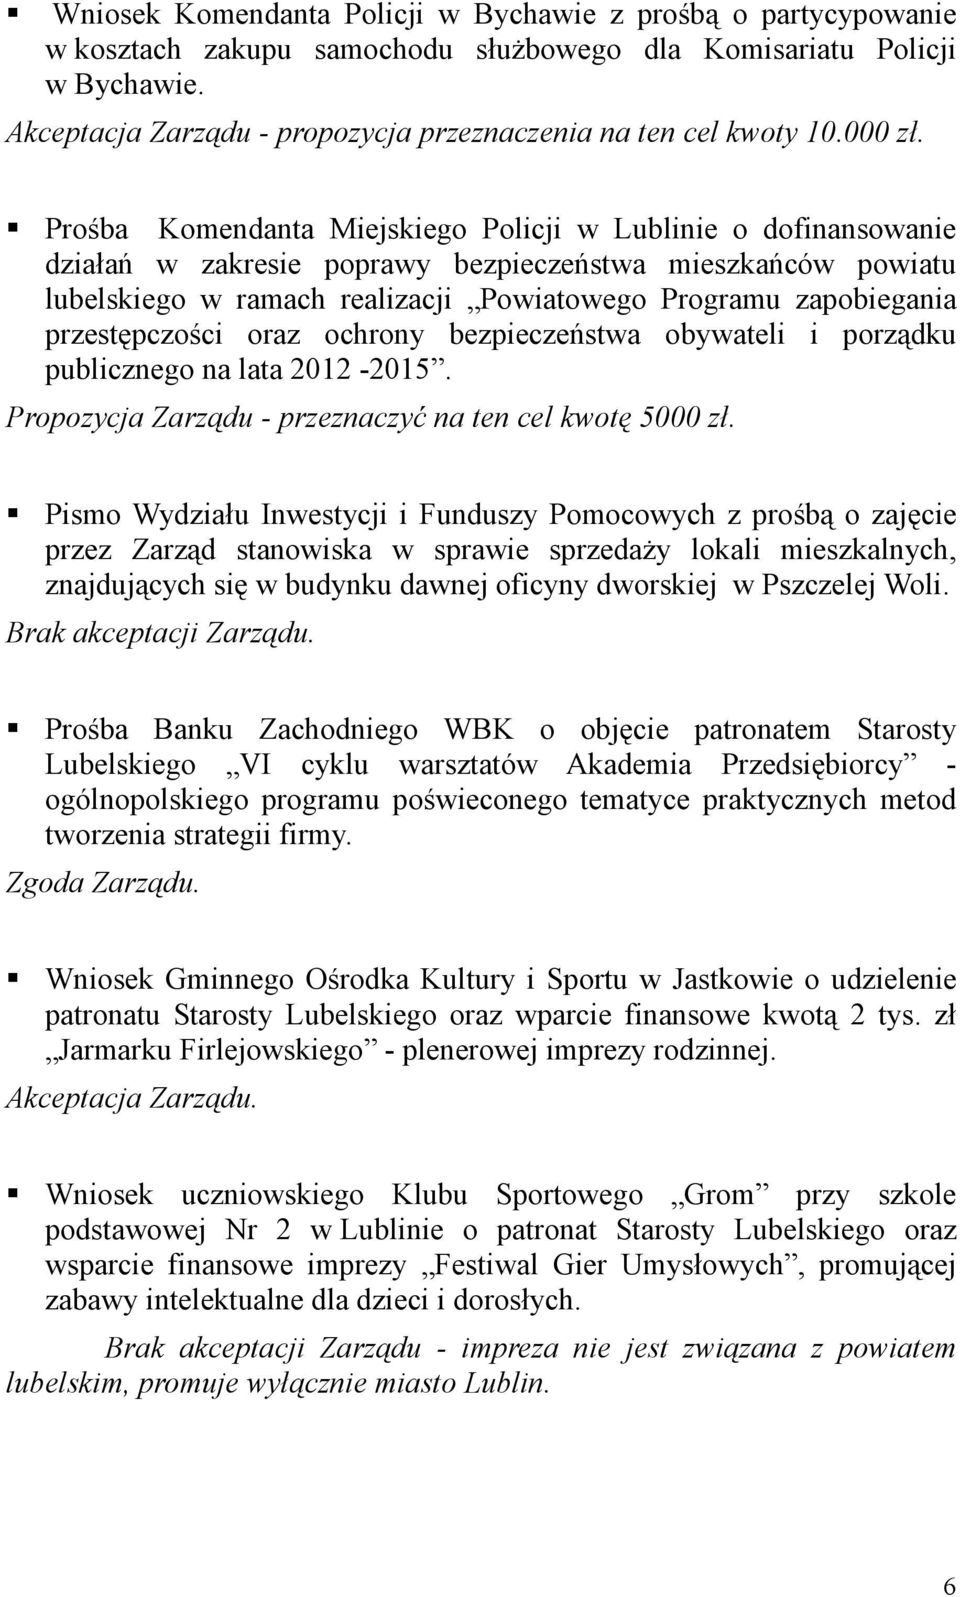 Prośba Komendanta Miejskiego Policji w Lublinie o dofinansowanie działań w zakresie poprawy bezpieczeństwa mieszkańców powiatu lubelskiego w ramach realizacji Powiatowego Programu zapobiegania